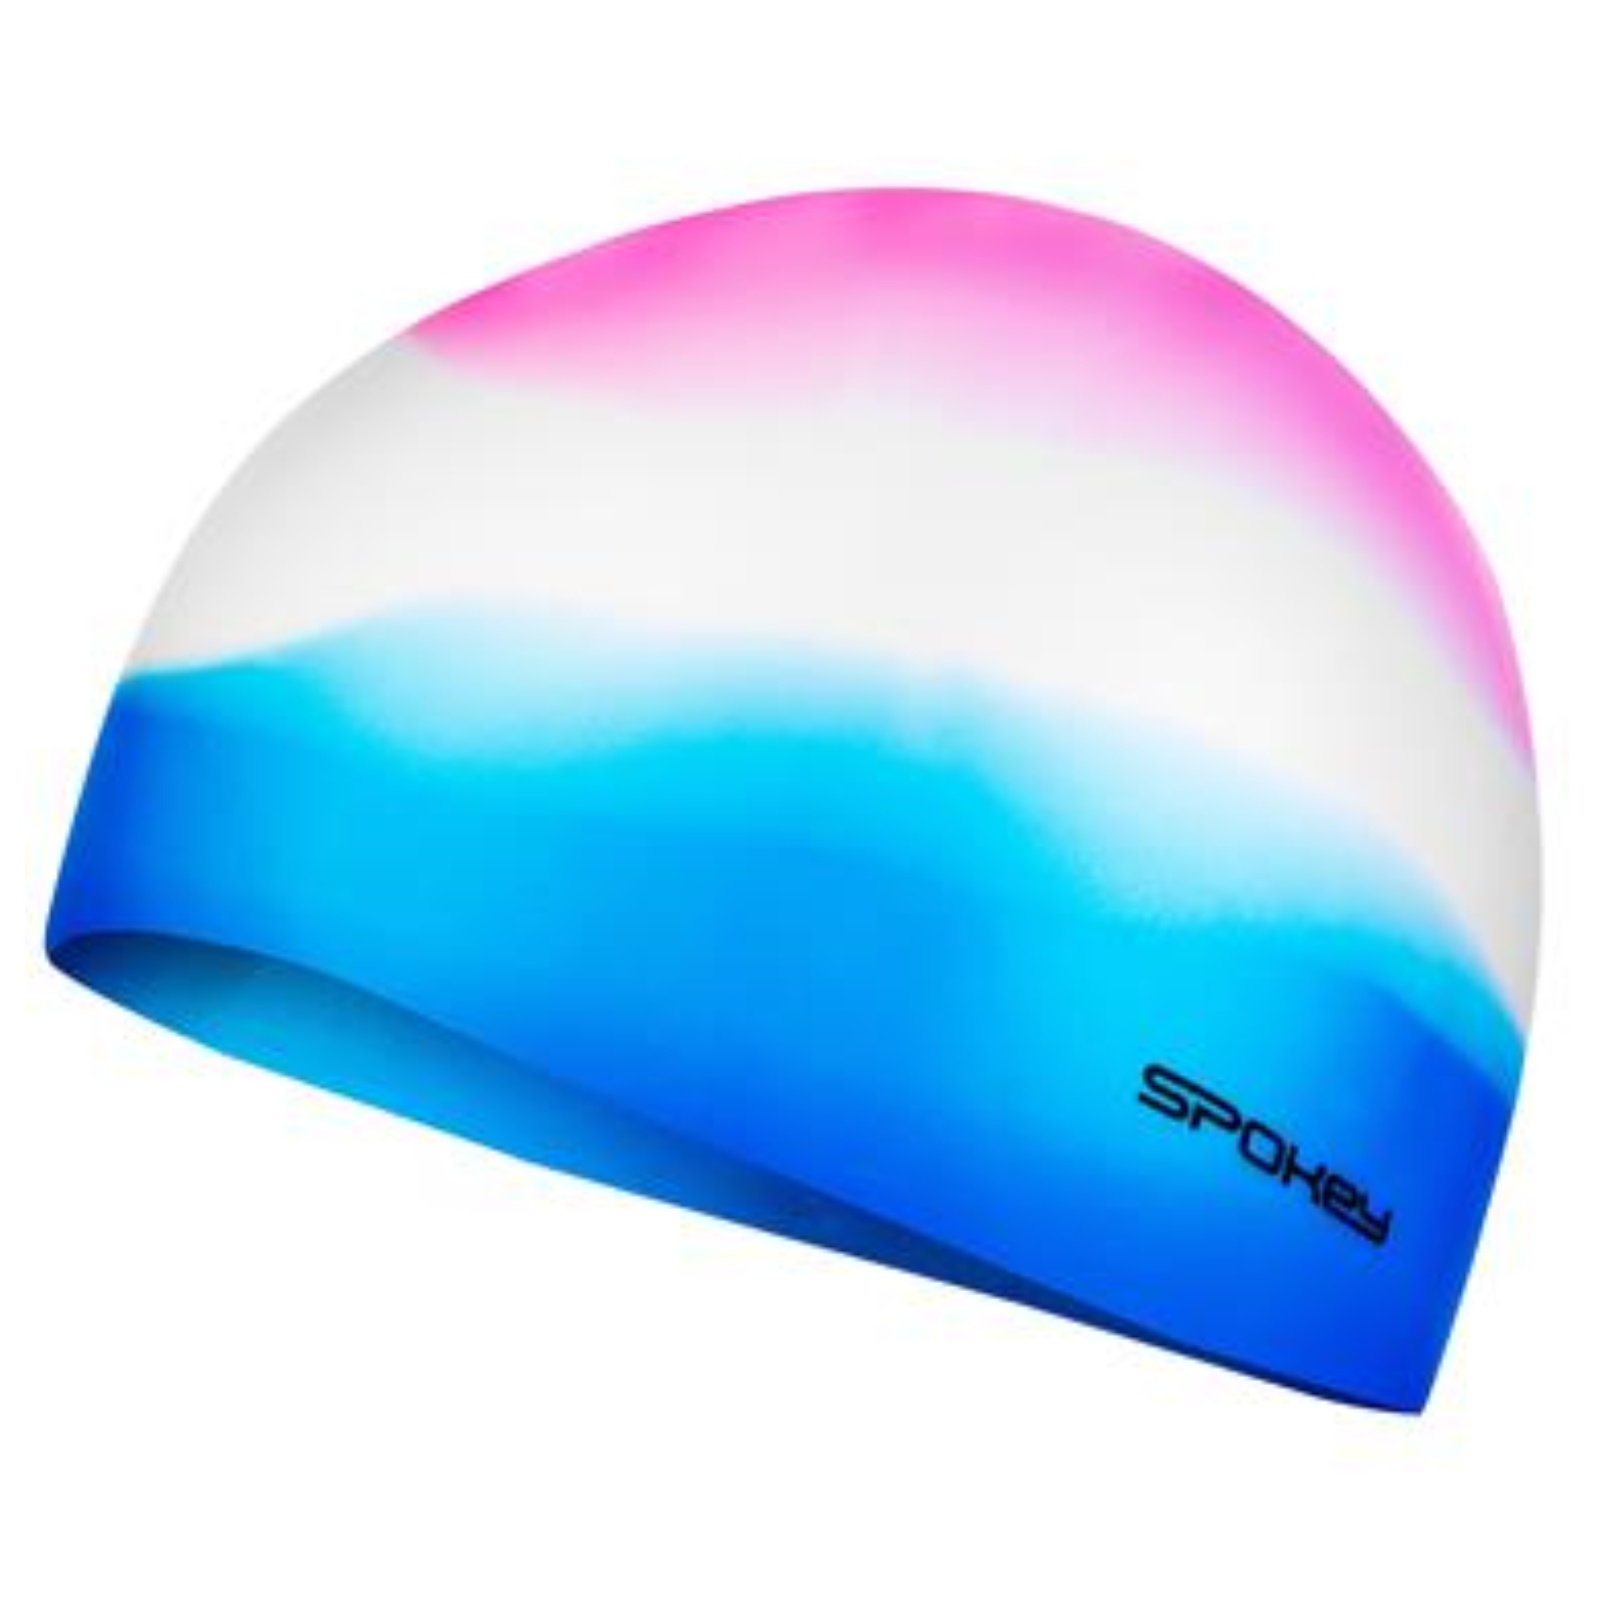 Plavecká čepice SPOKEY Abstract - růžovo-bílo-modrá